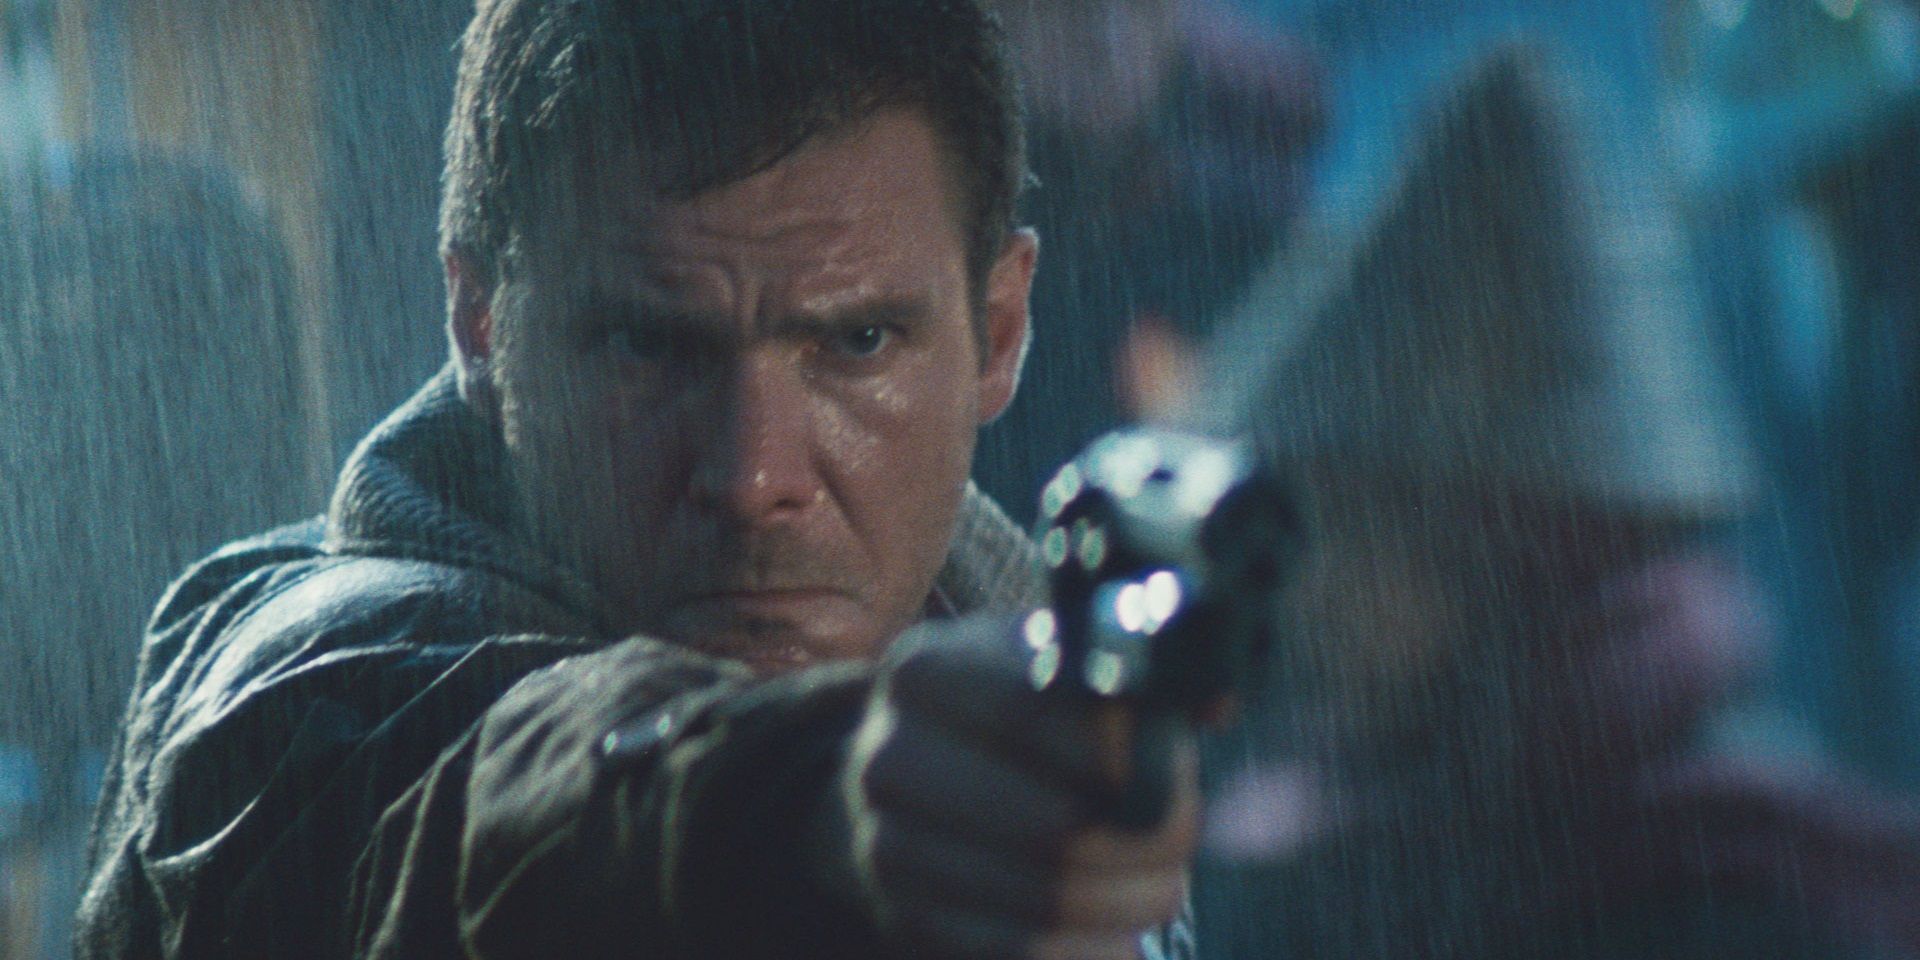 Rick Deckard points his gun at someone in Blade Runner